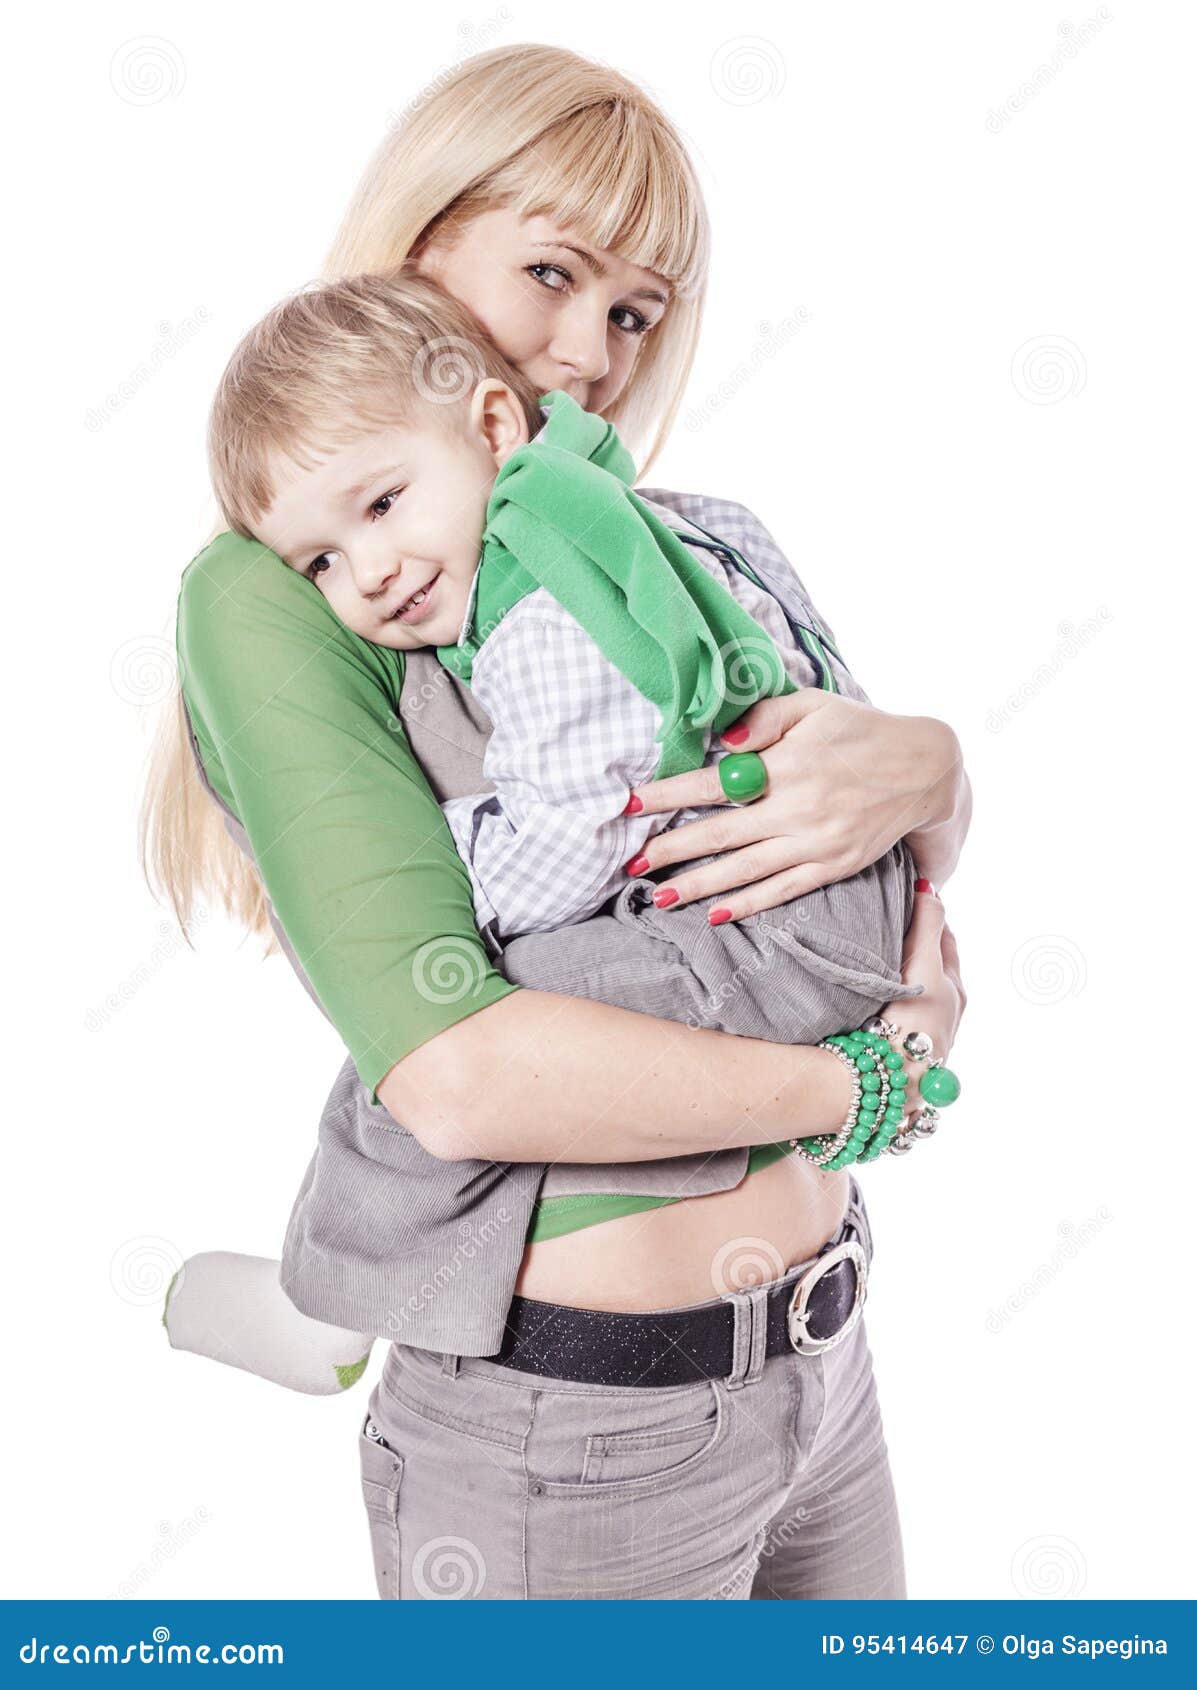 Плотный мать. Ребенок на коленках у мамы. Мама держит ребенка на коленях. Мама обнимает ребенка на коленях. Девушка держит ребенка на коленях.